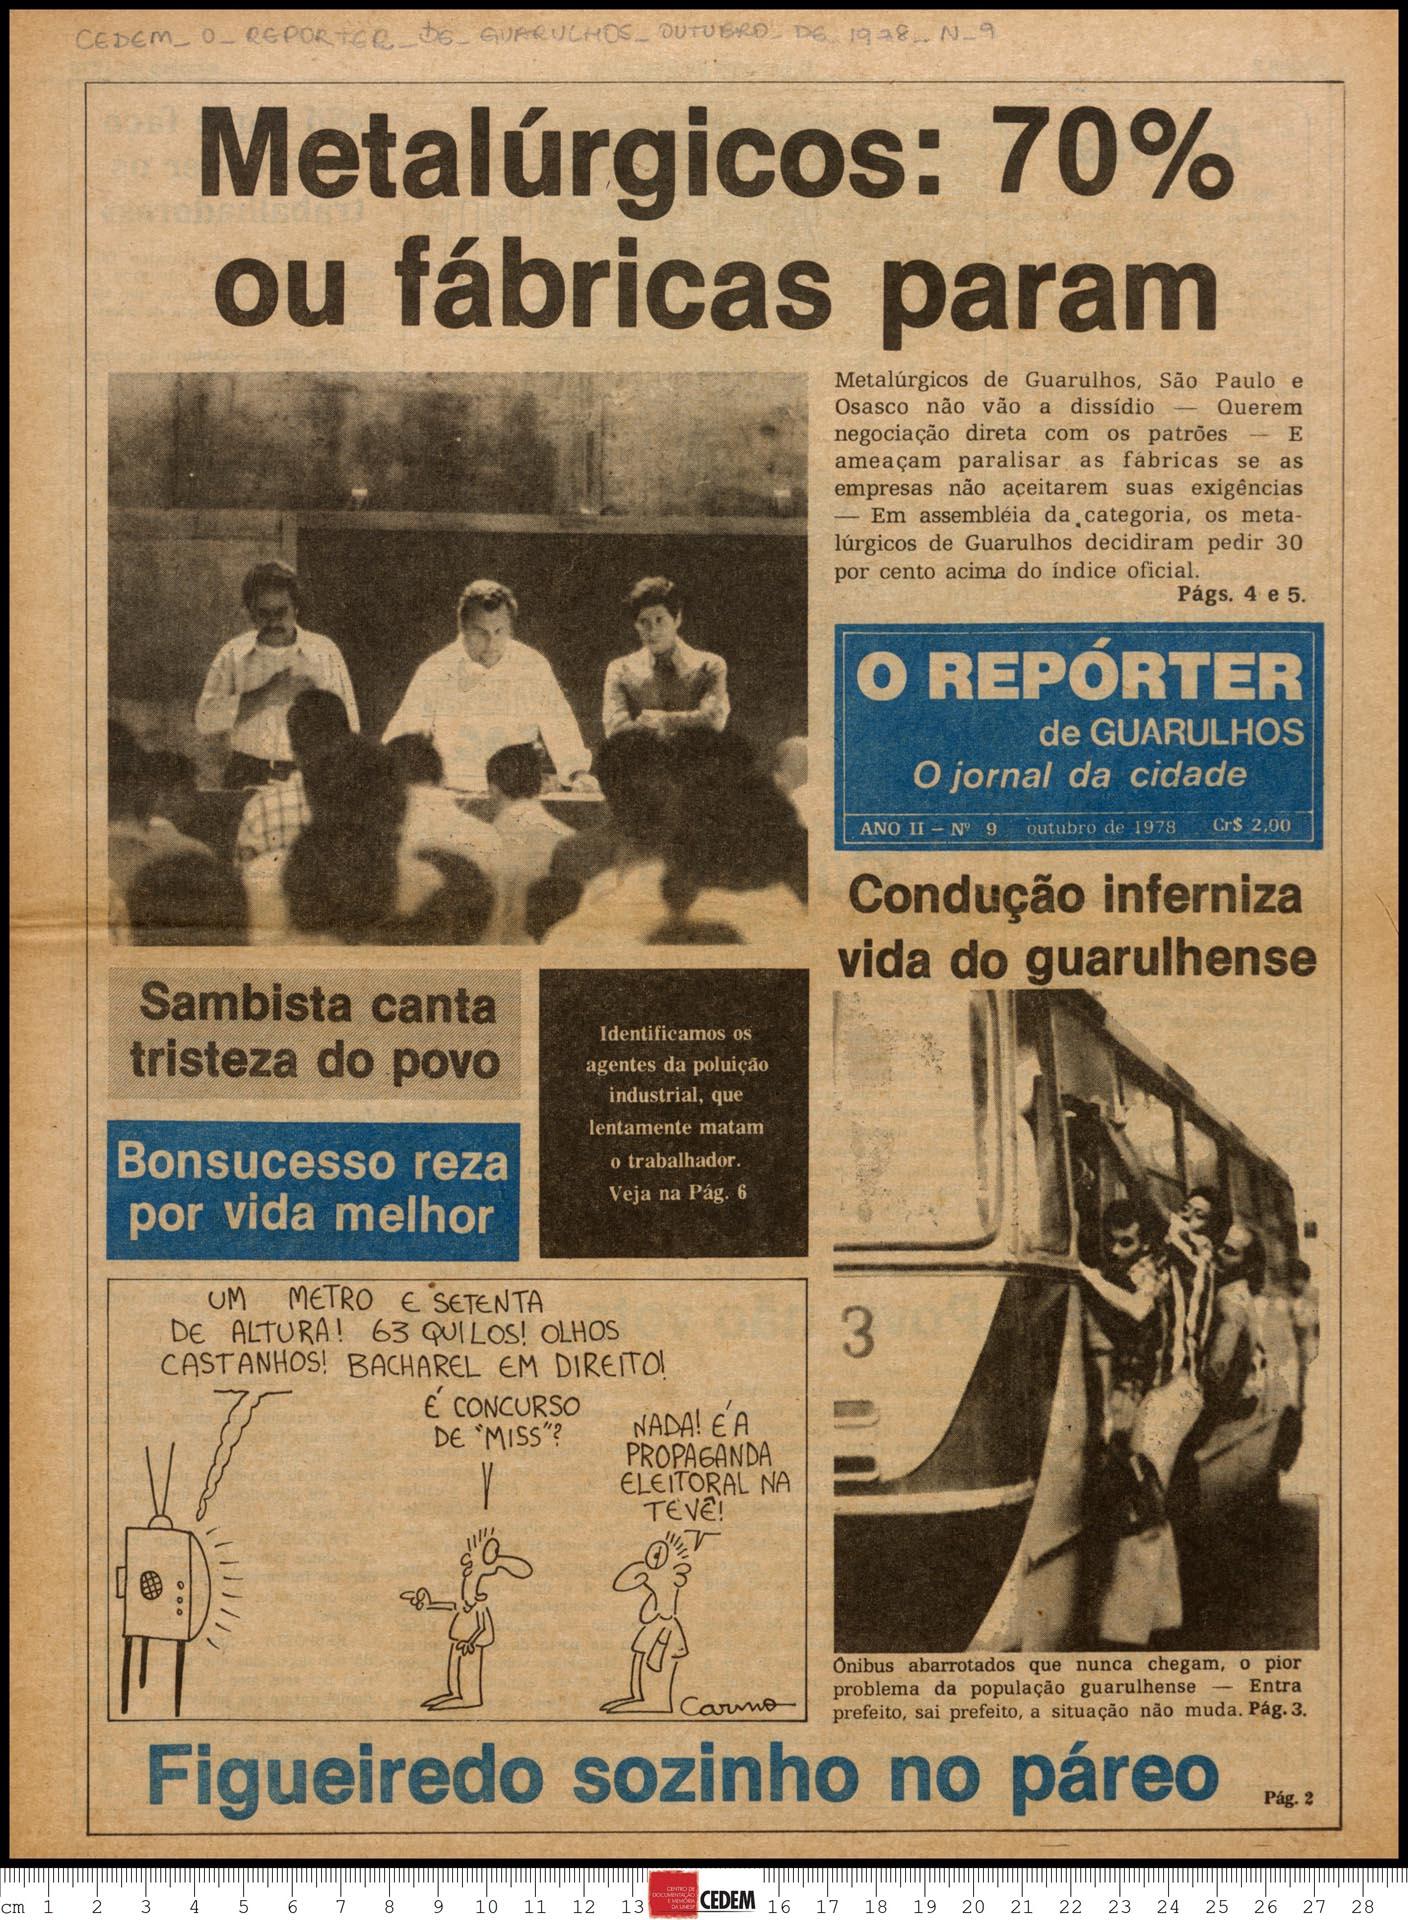 O reportér de Guarulhos - 9 - out. 1978